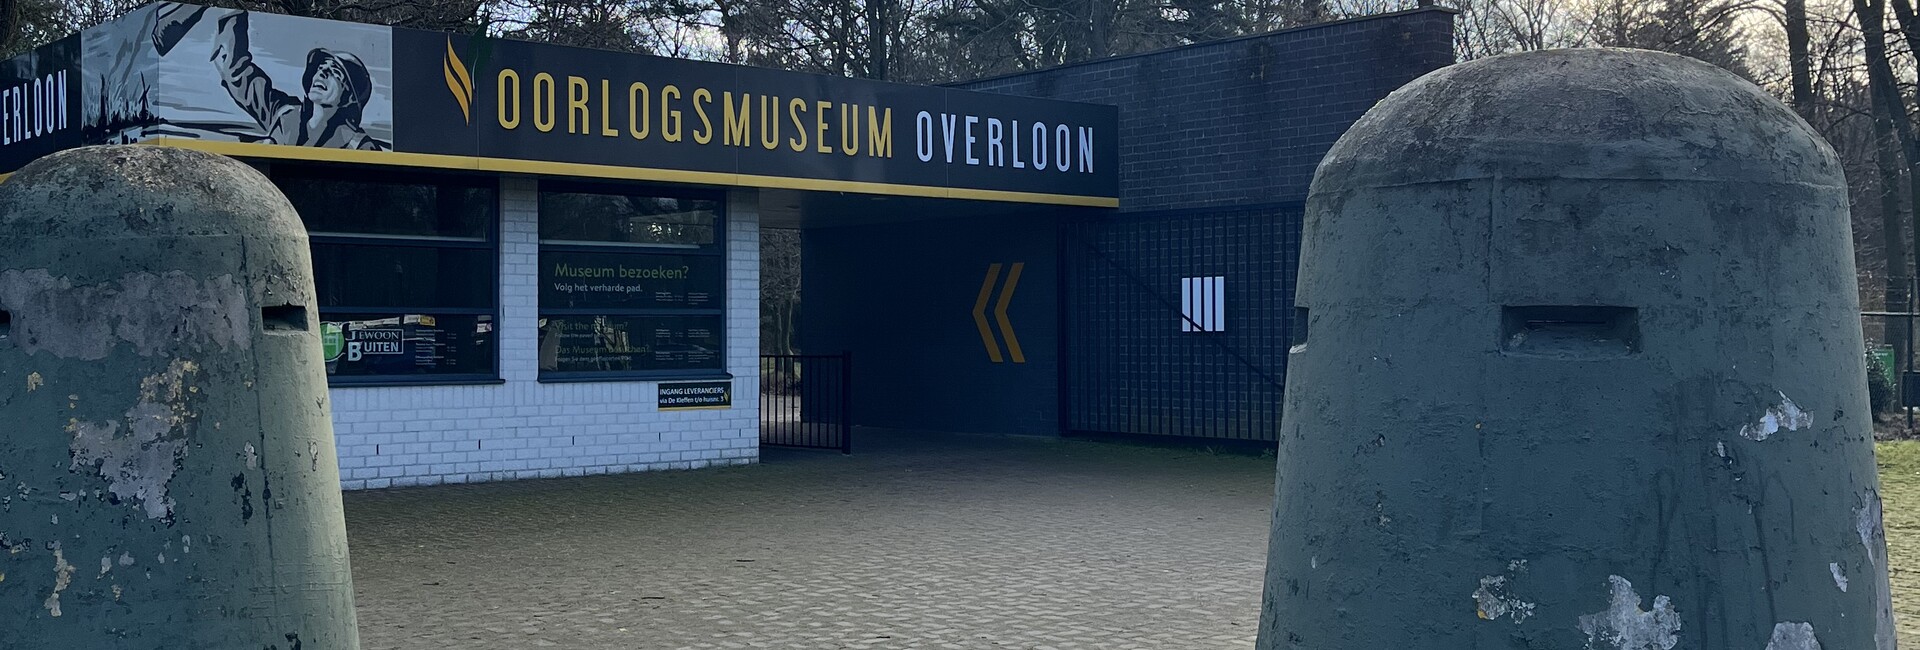 oorlogsmuseum - Openingstijden